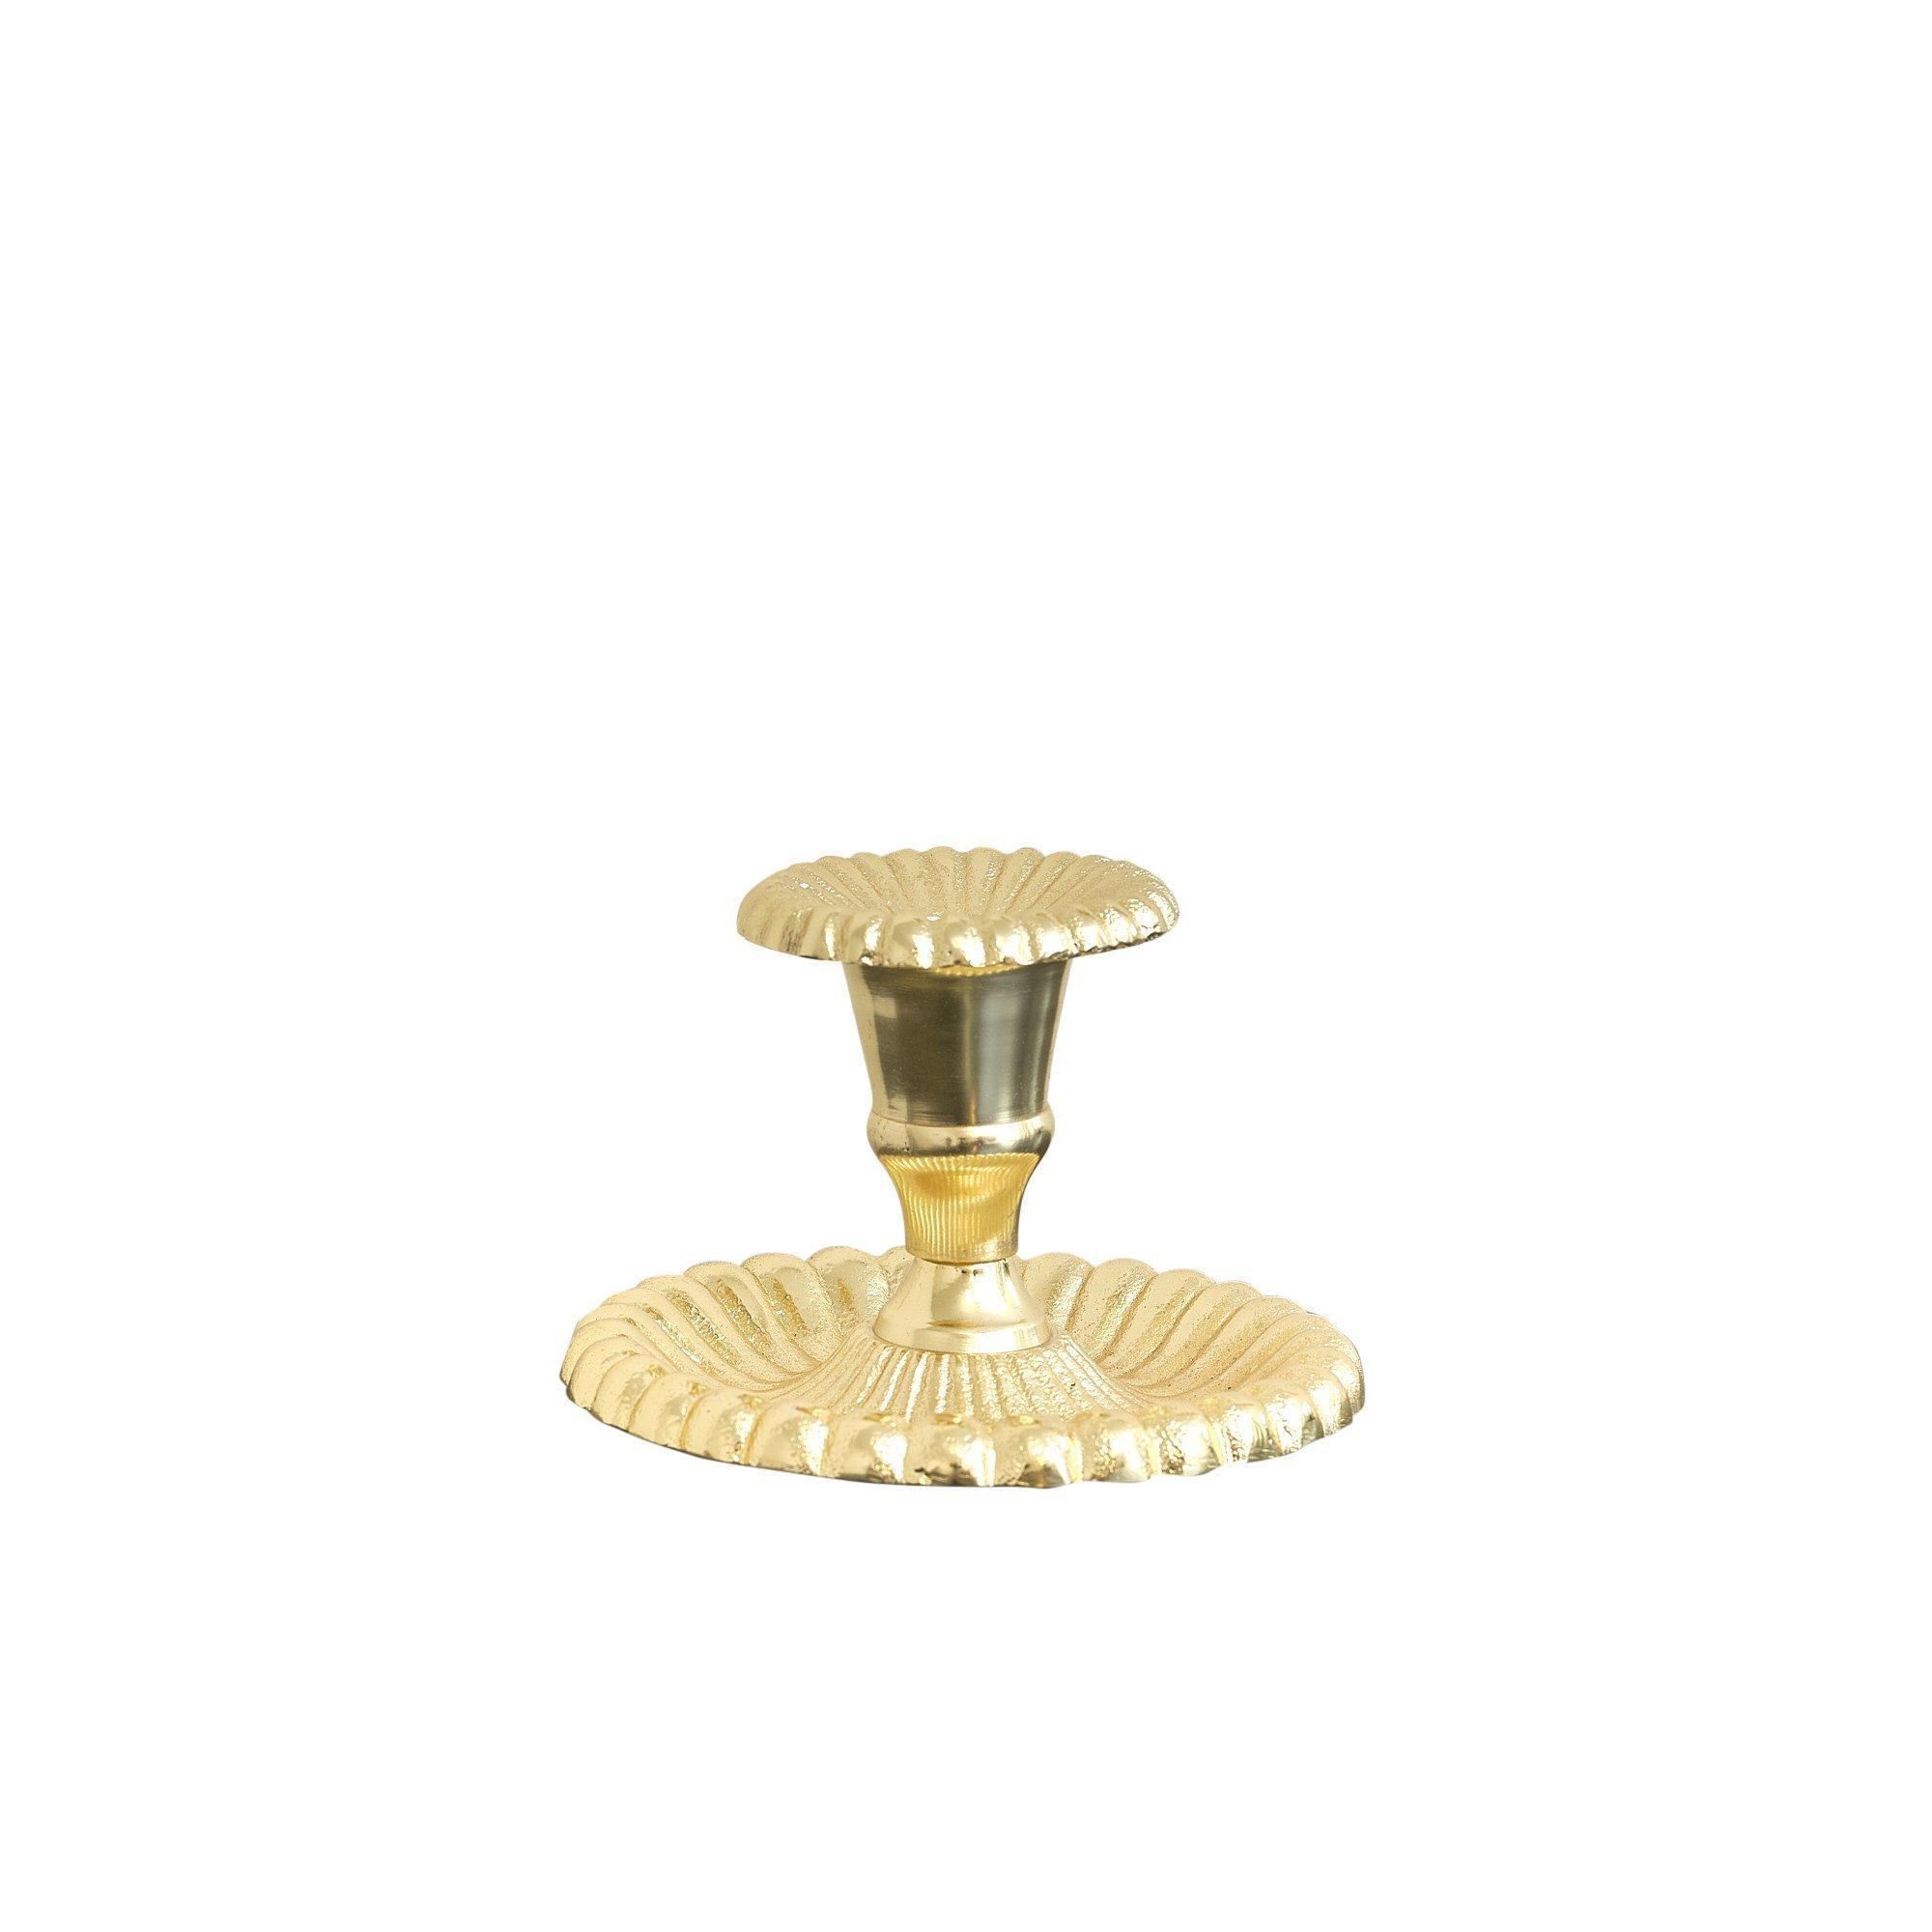 Ornate Vintage Gold Chamber Candlestick Holder - image 1